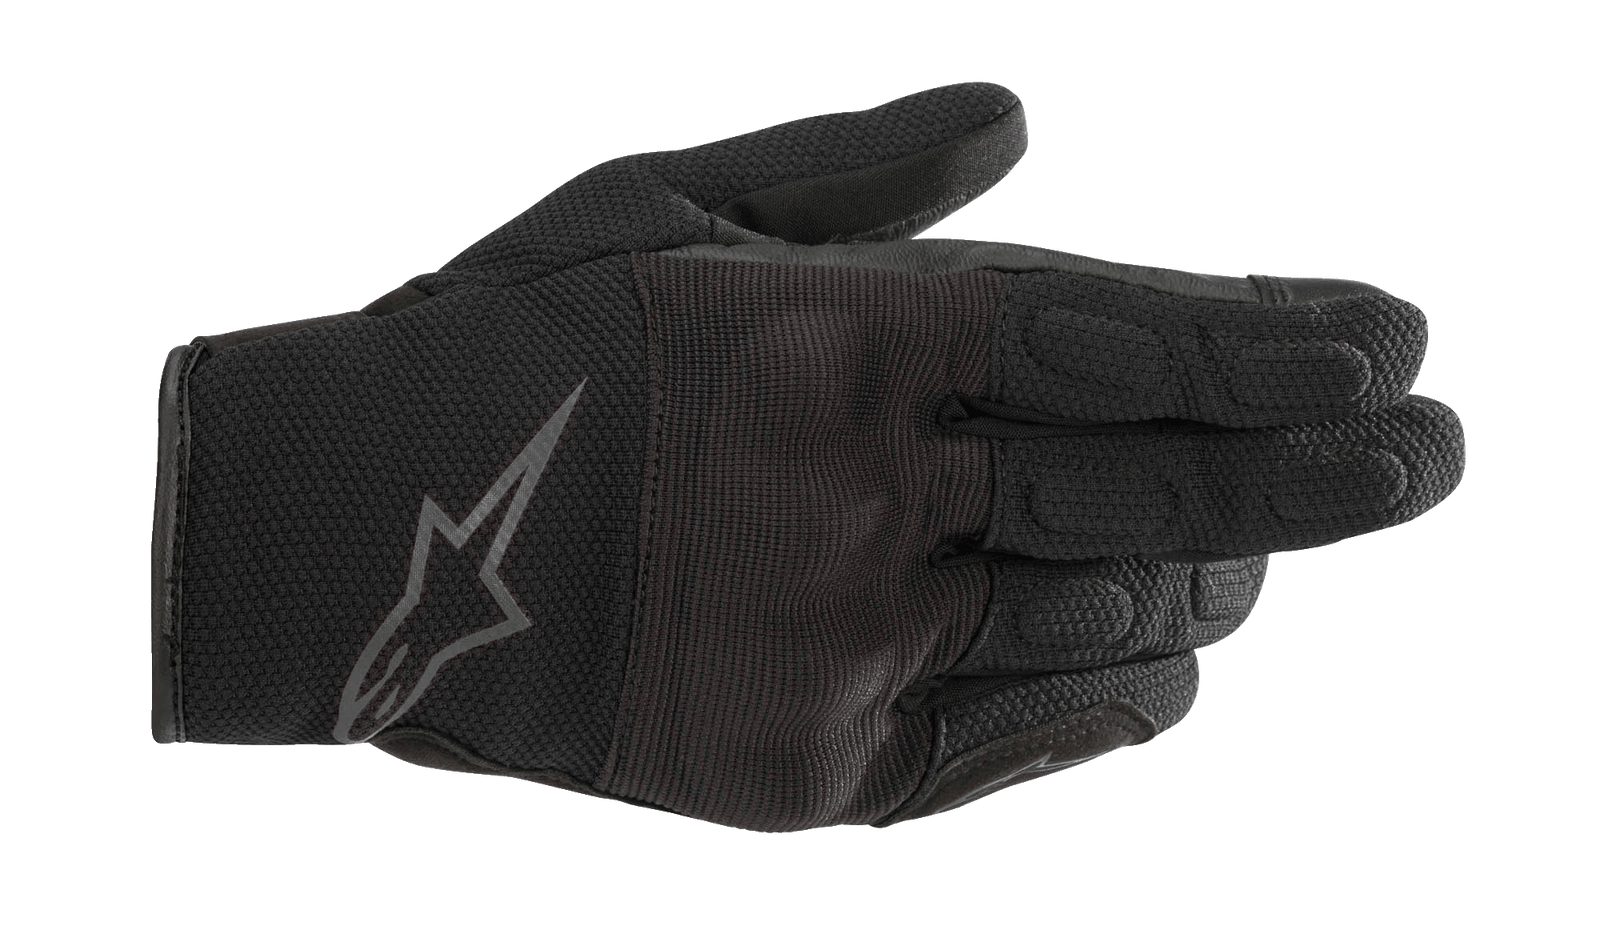 S-Max Women's Handschuhe